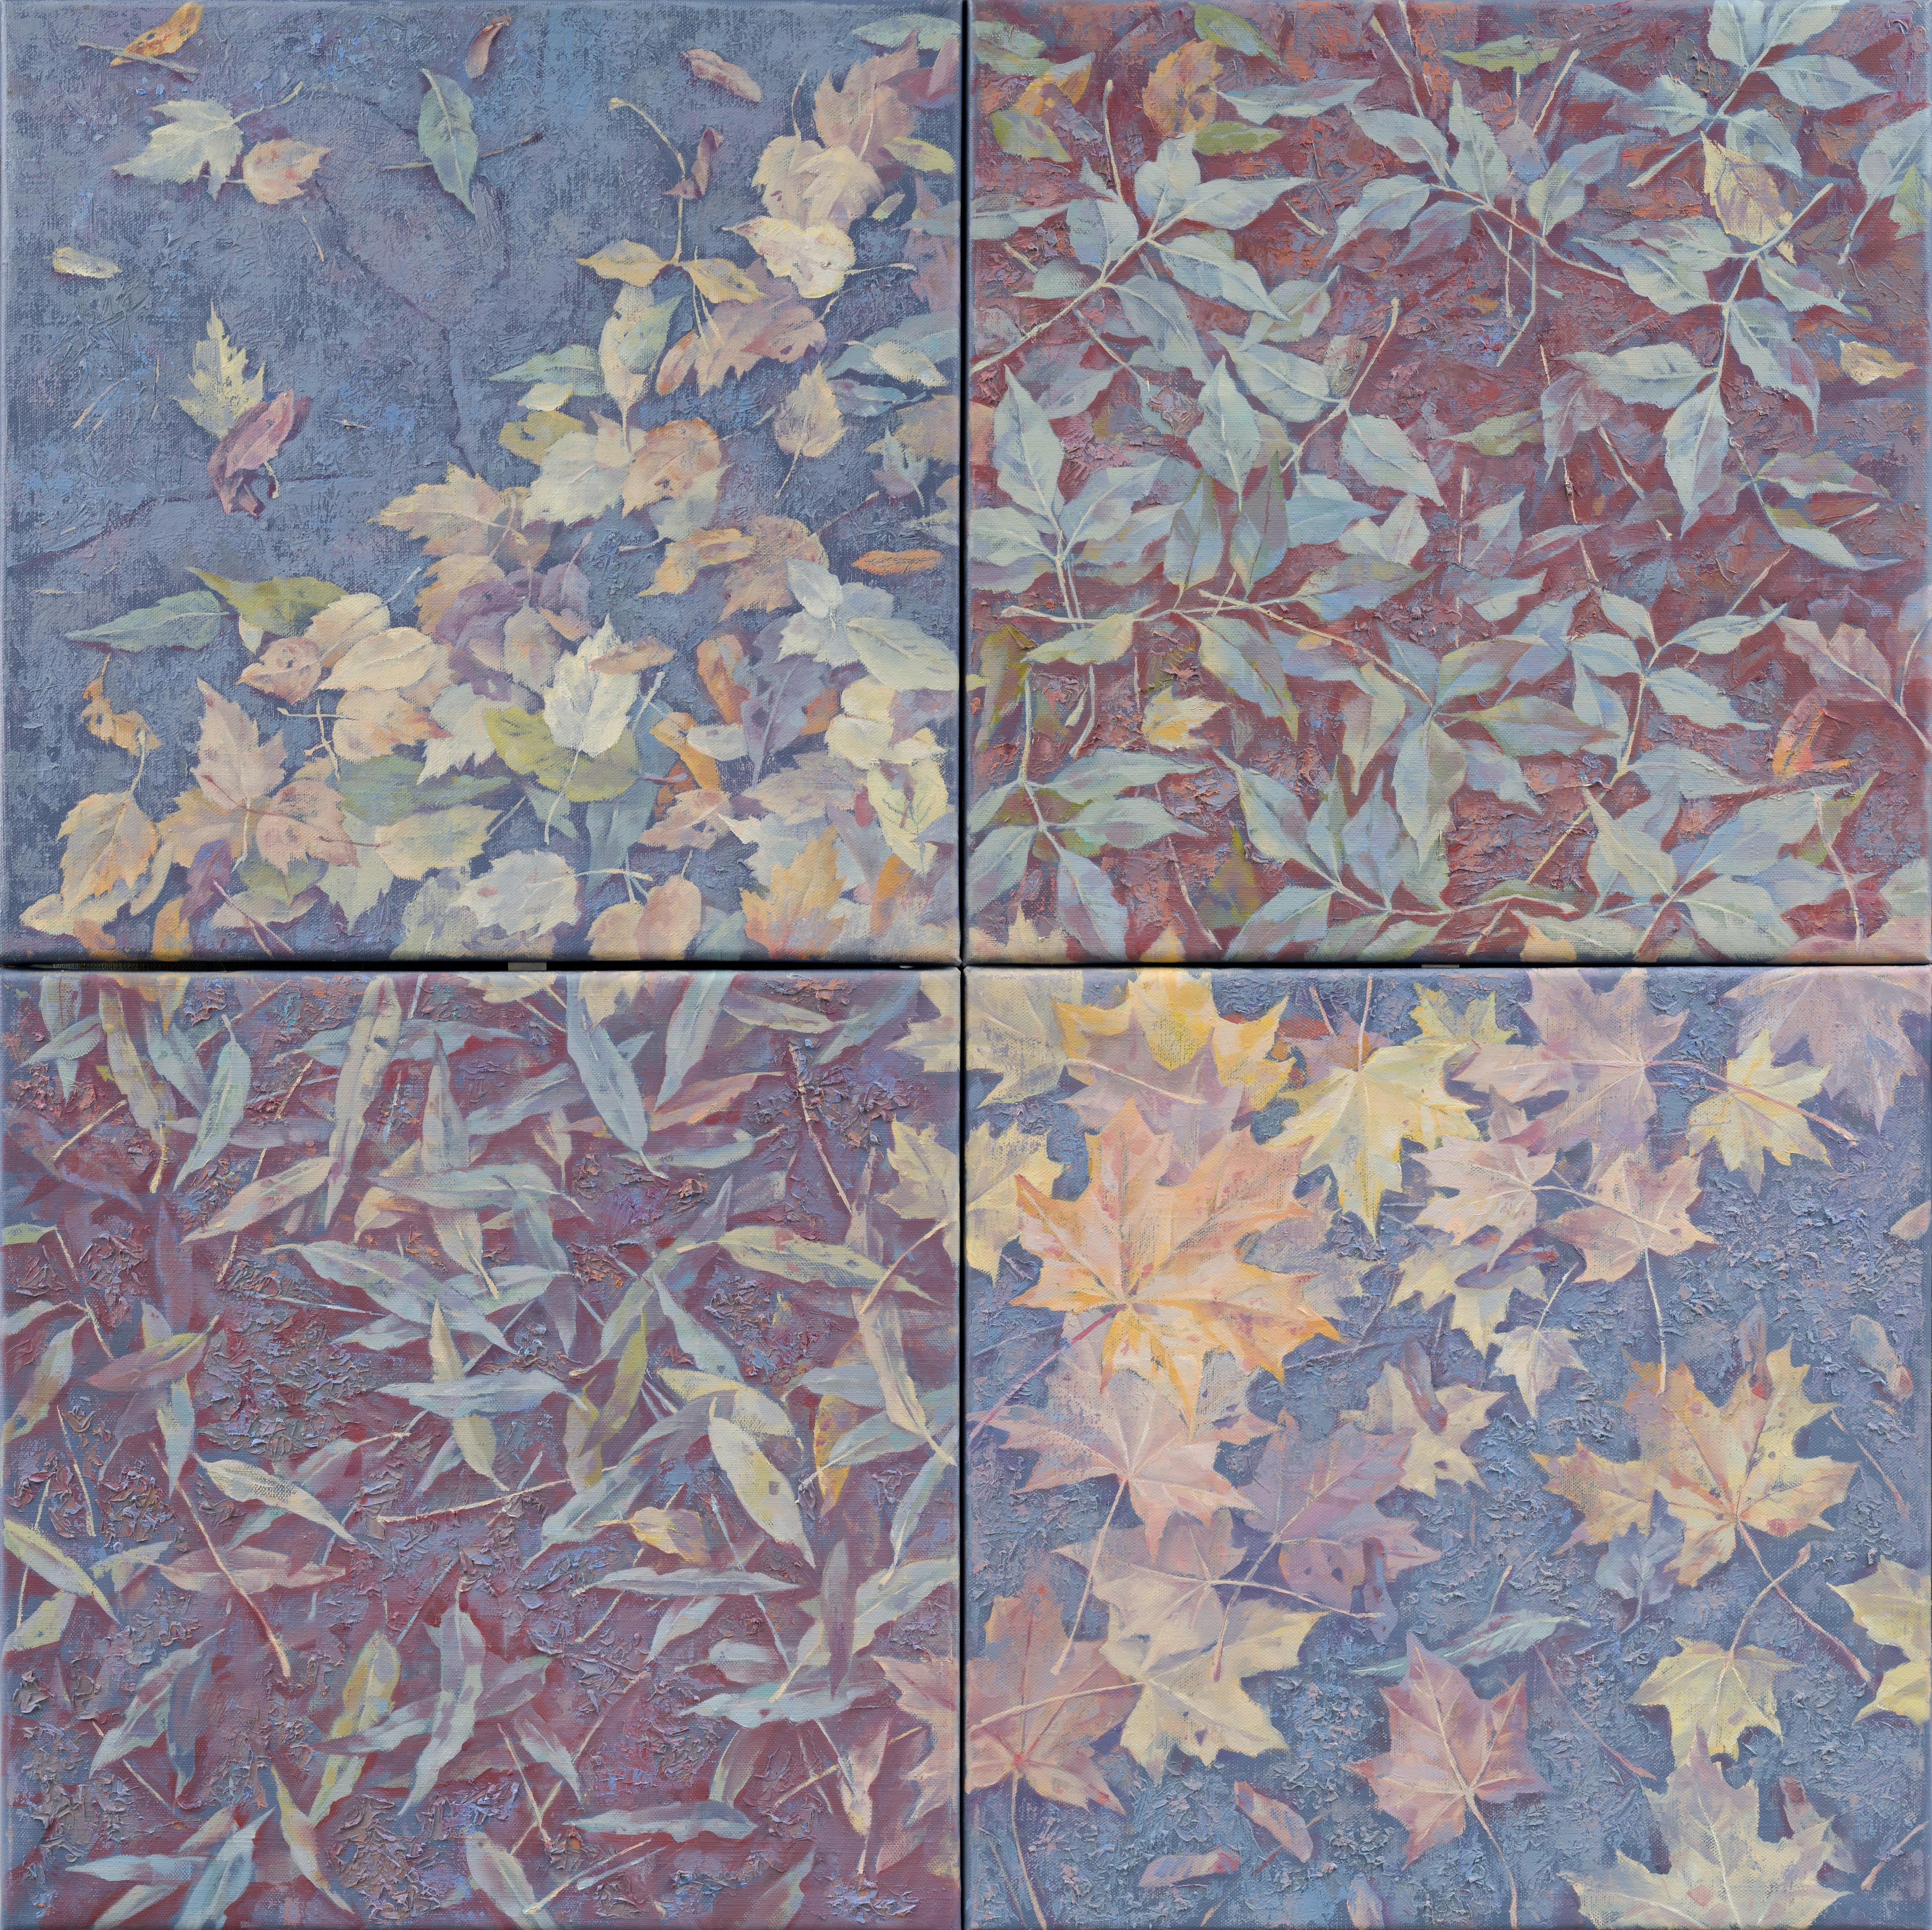 Autumn carpet